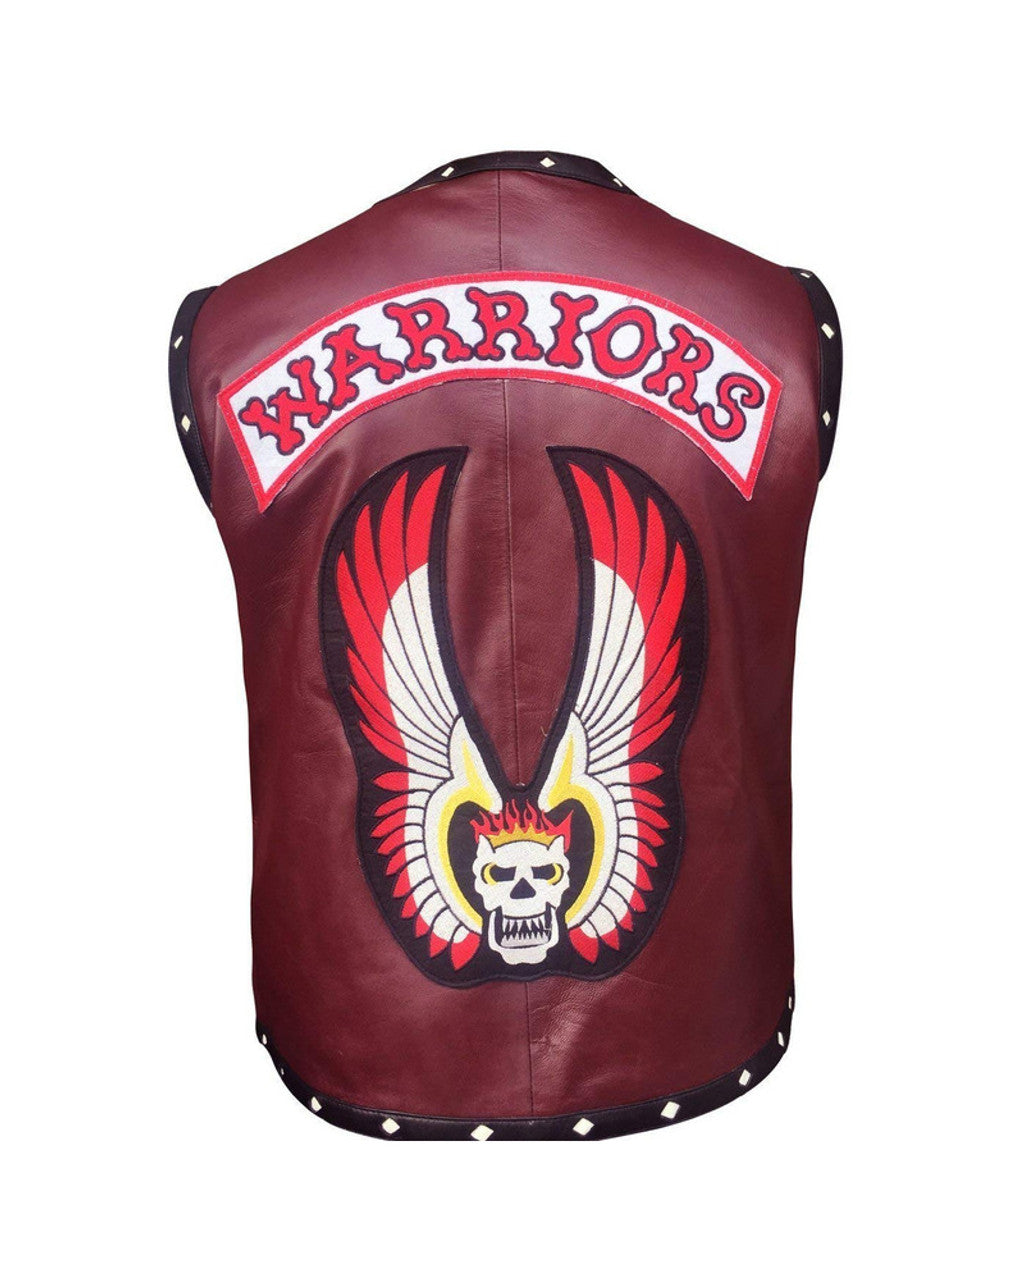 warrior vest for men leather jacket for men maroon vest men warrior vest men genuine leather vest men biker vest for men gift fo him 